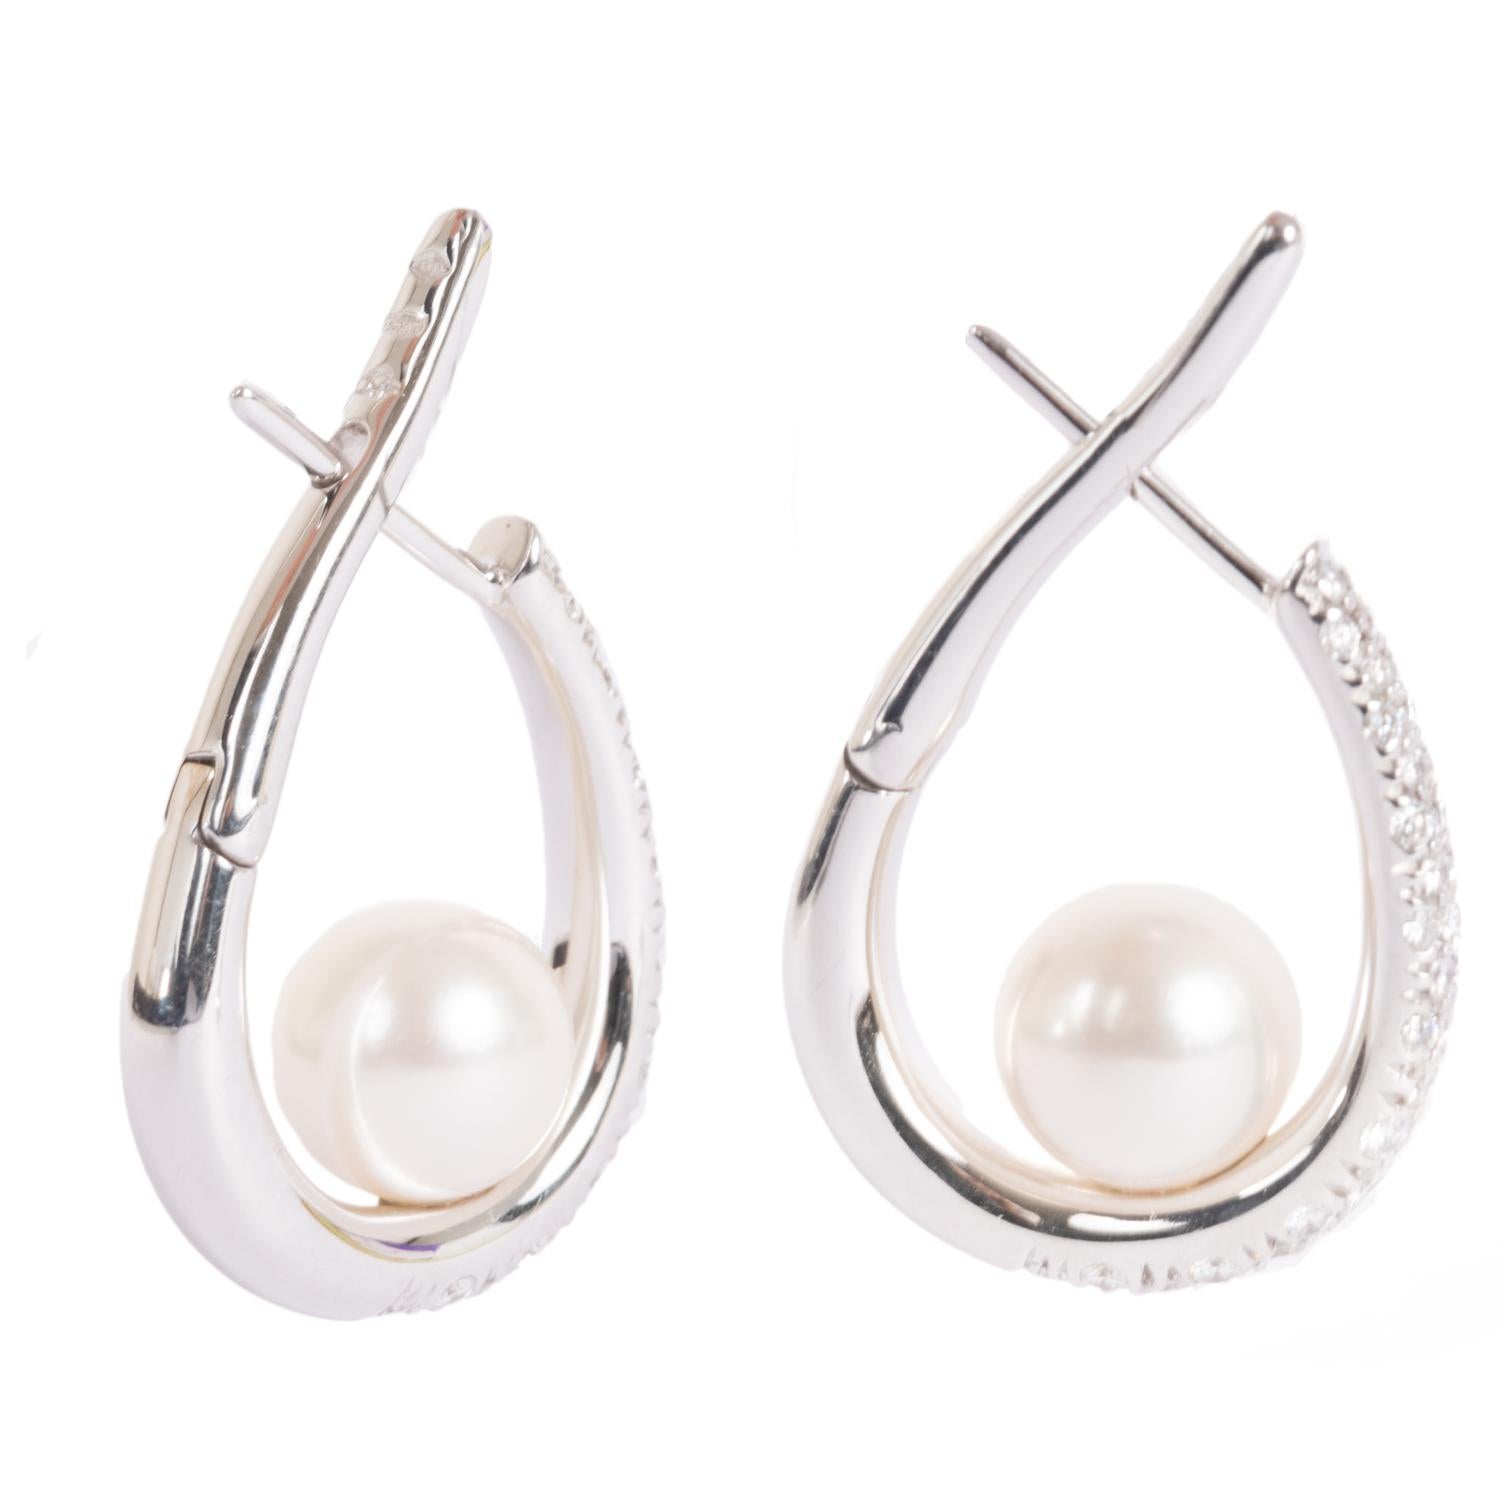 Ein sehr elegantes Paar Ohrringe aus Weißgold mit japanischer Perle und Diamanten, Perlendurchmesser 9 und 1,26 Karat weiße Diamanten.

höhe 3,5 cm Länge 2,5 cm

 17, 6 gr


